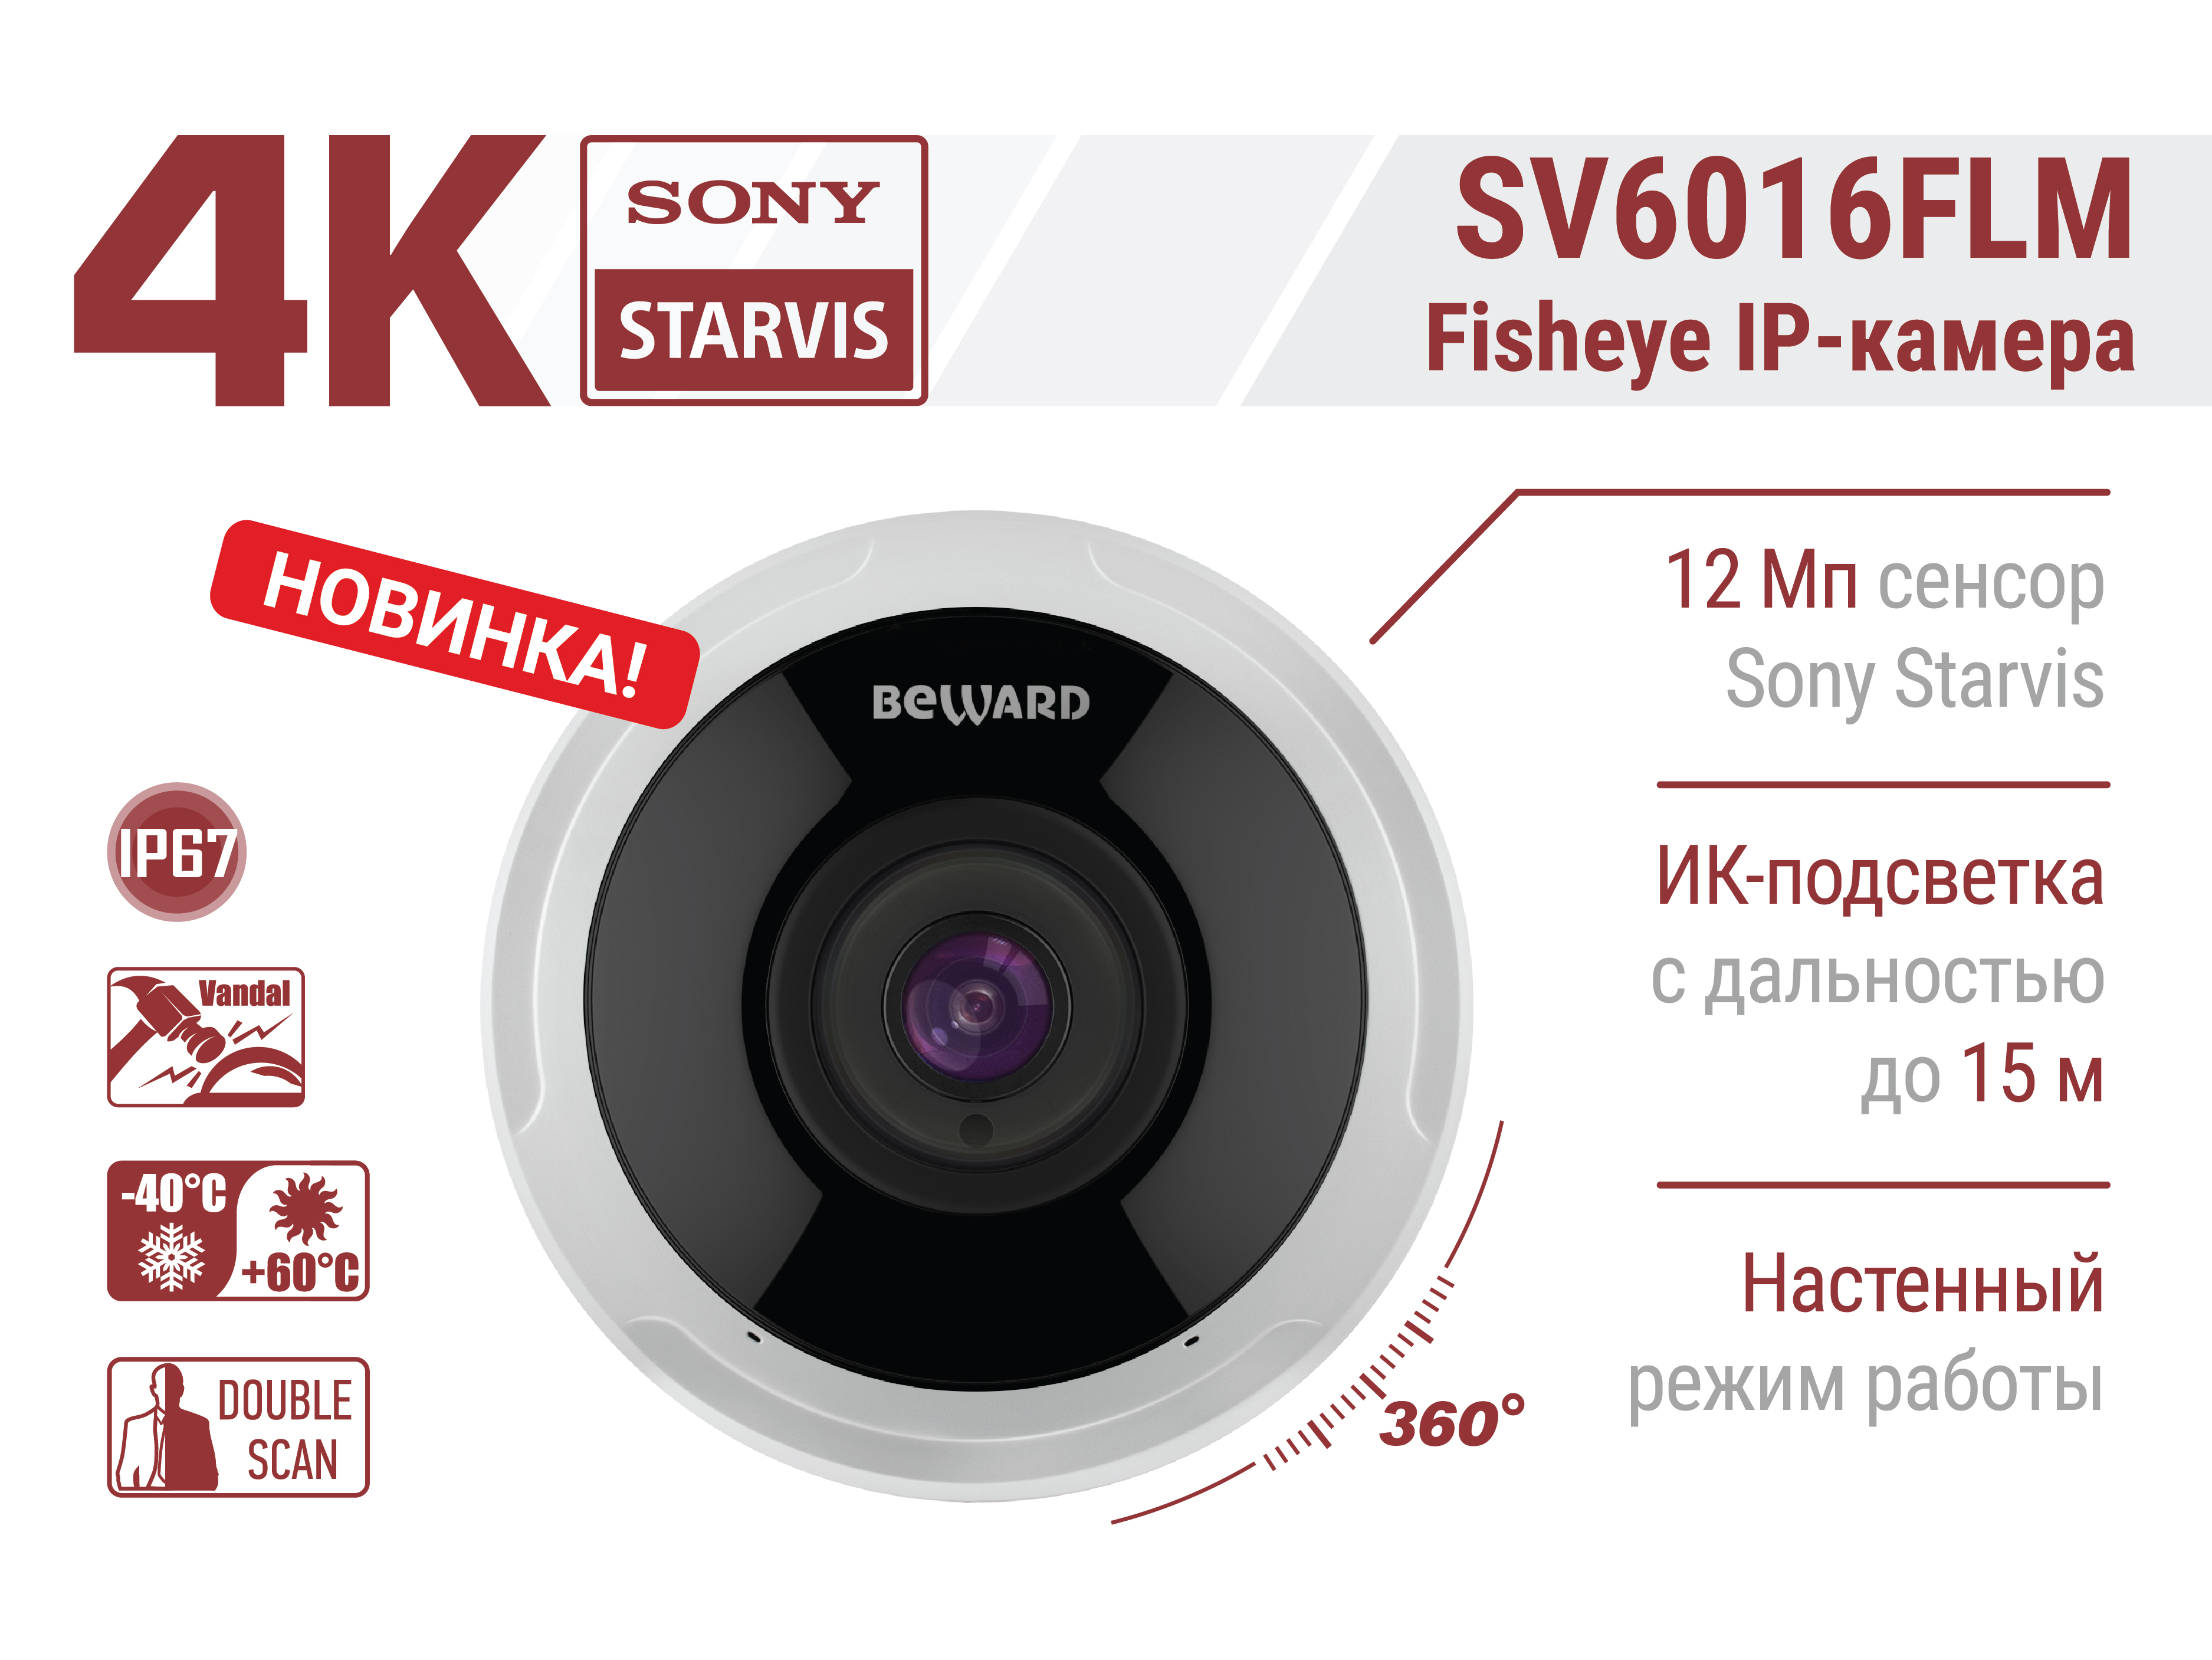 Новинка! IP-камера BEWARD SV6016FLM. 4К видео сверхвысокой четкости